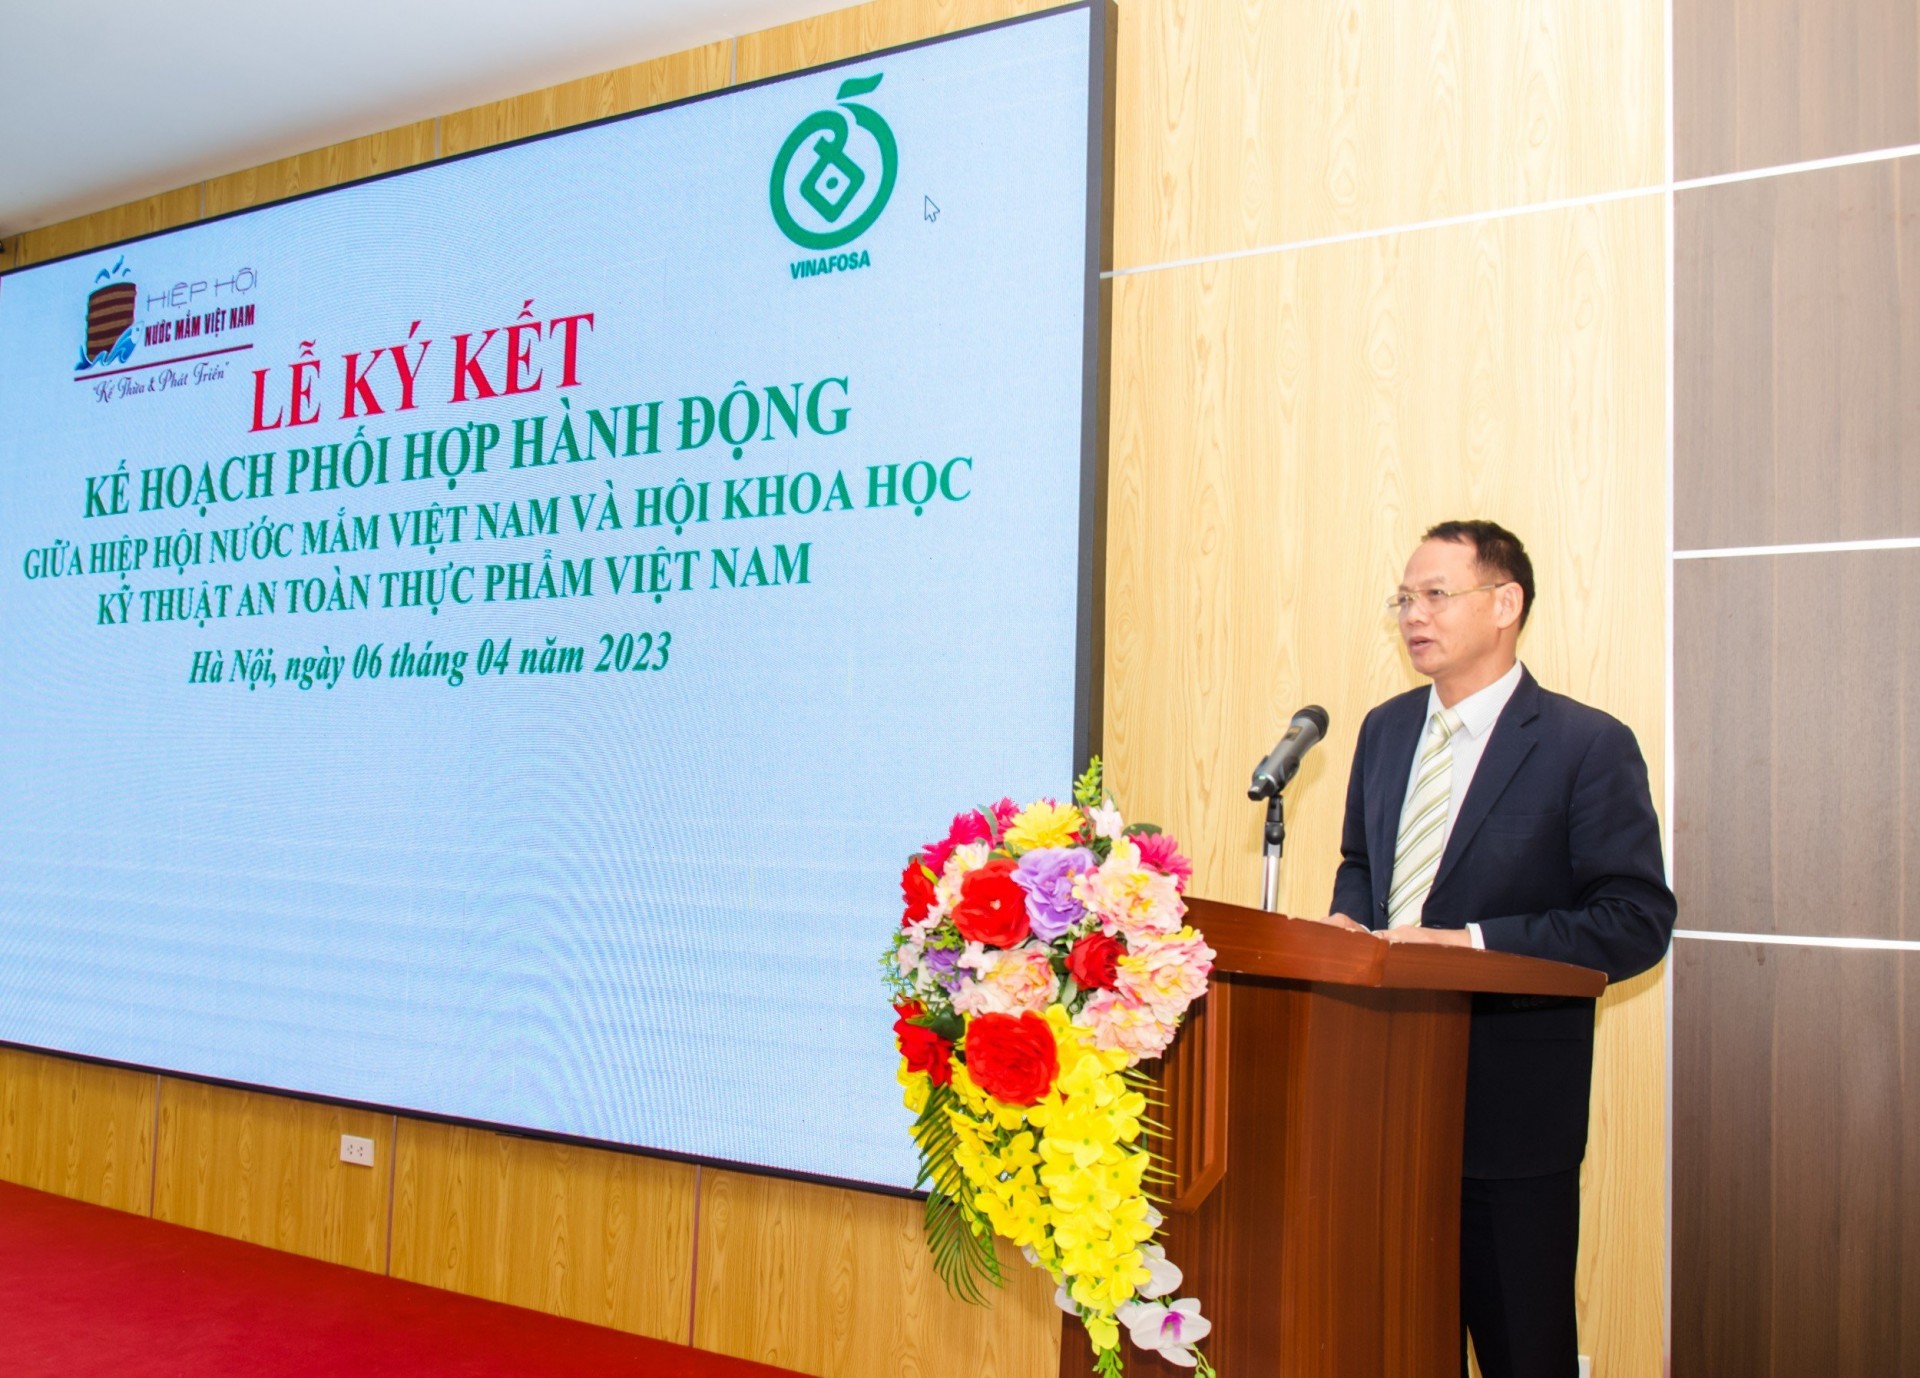 TS. Lê Văn Giang – Chủ tịchHội KHKT An toàn thực phẩm Việt Nam tại buổi lễ